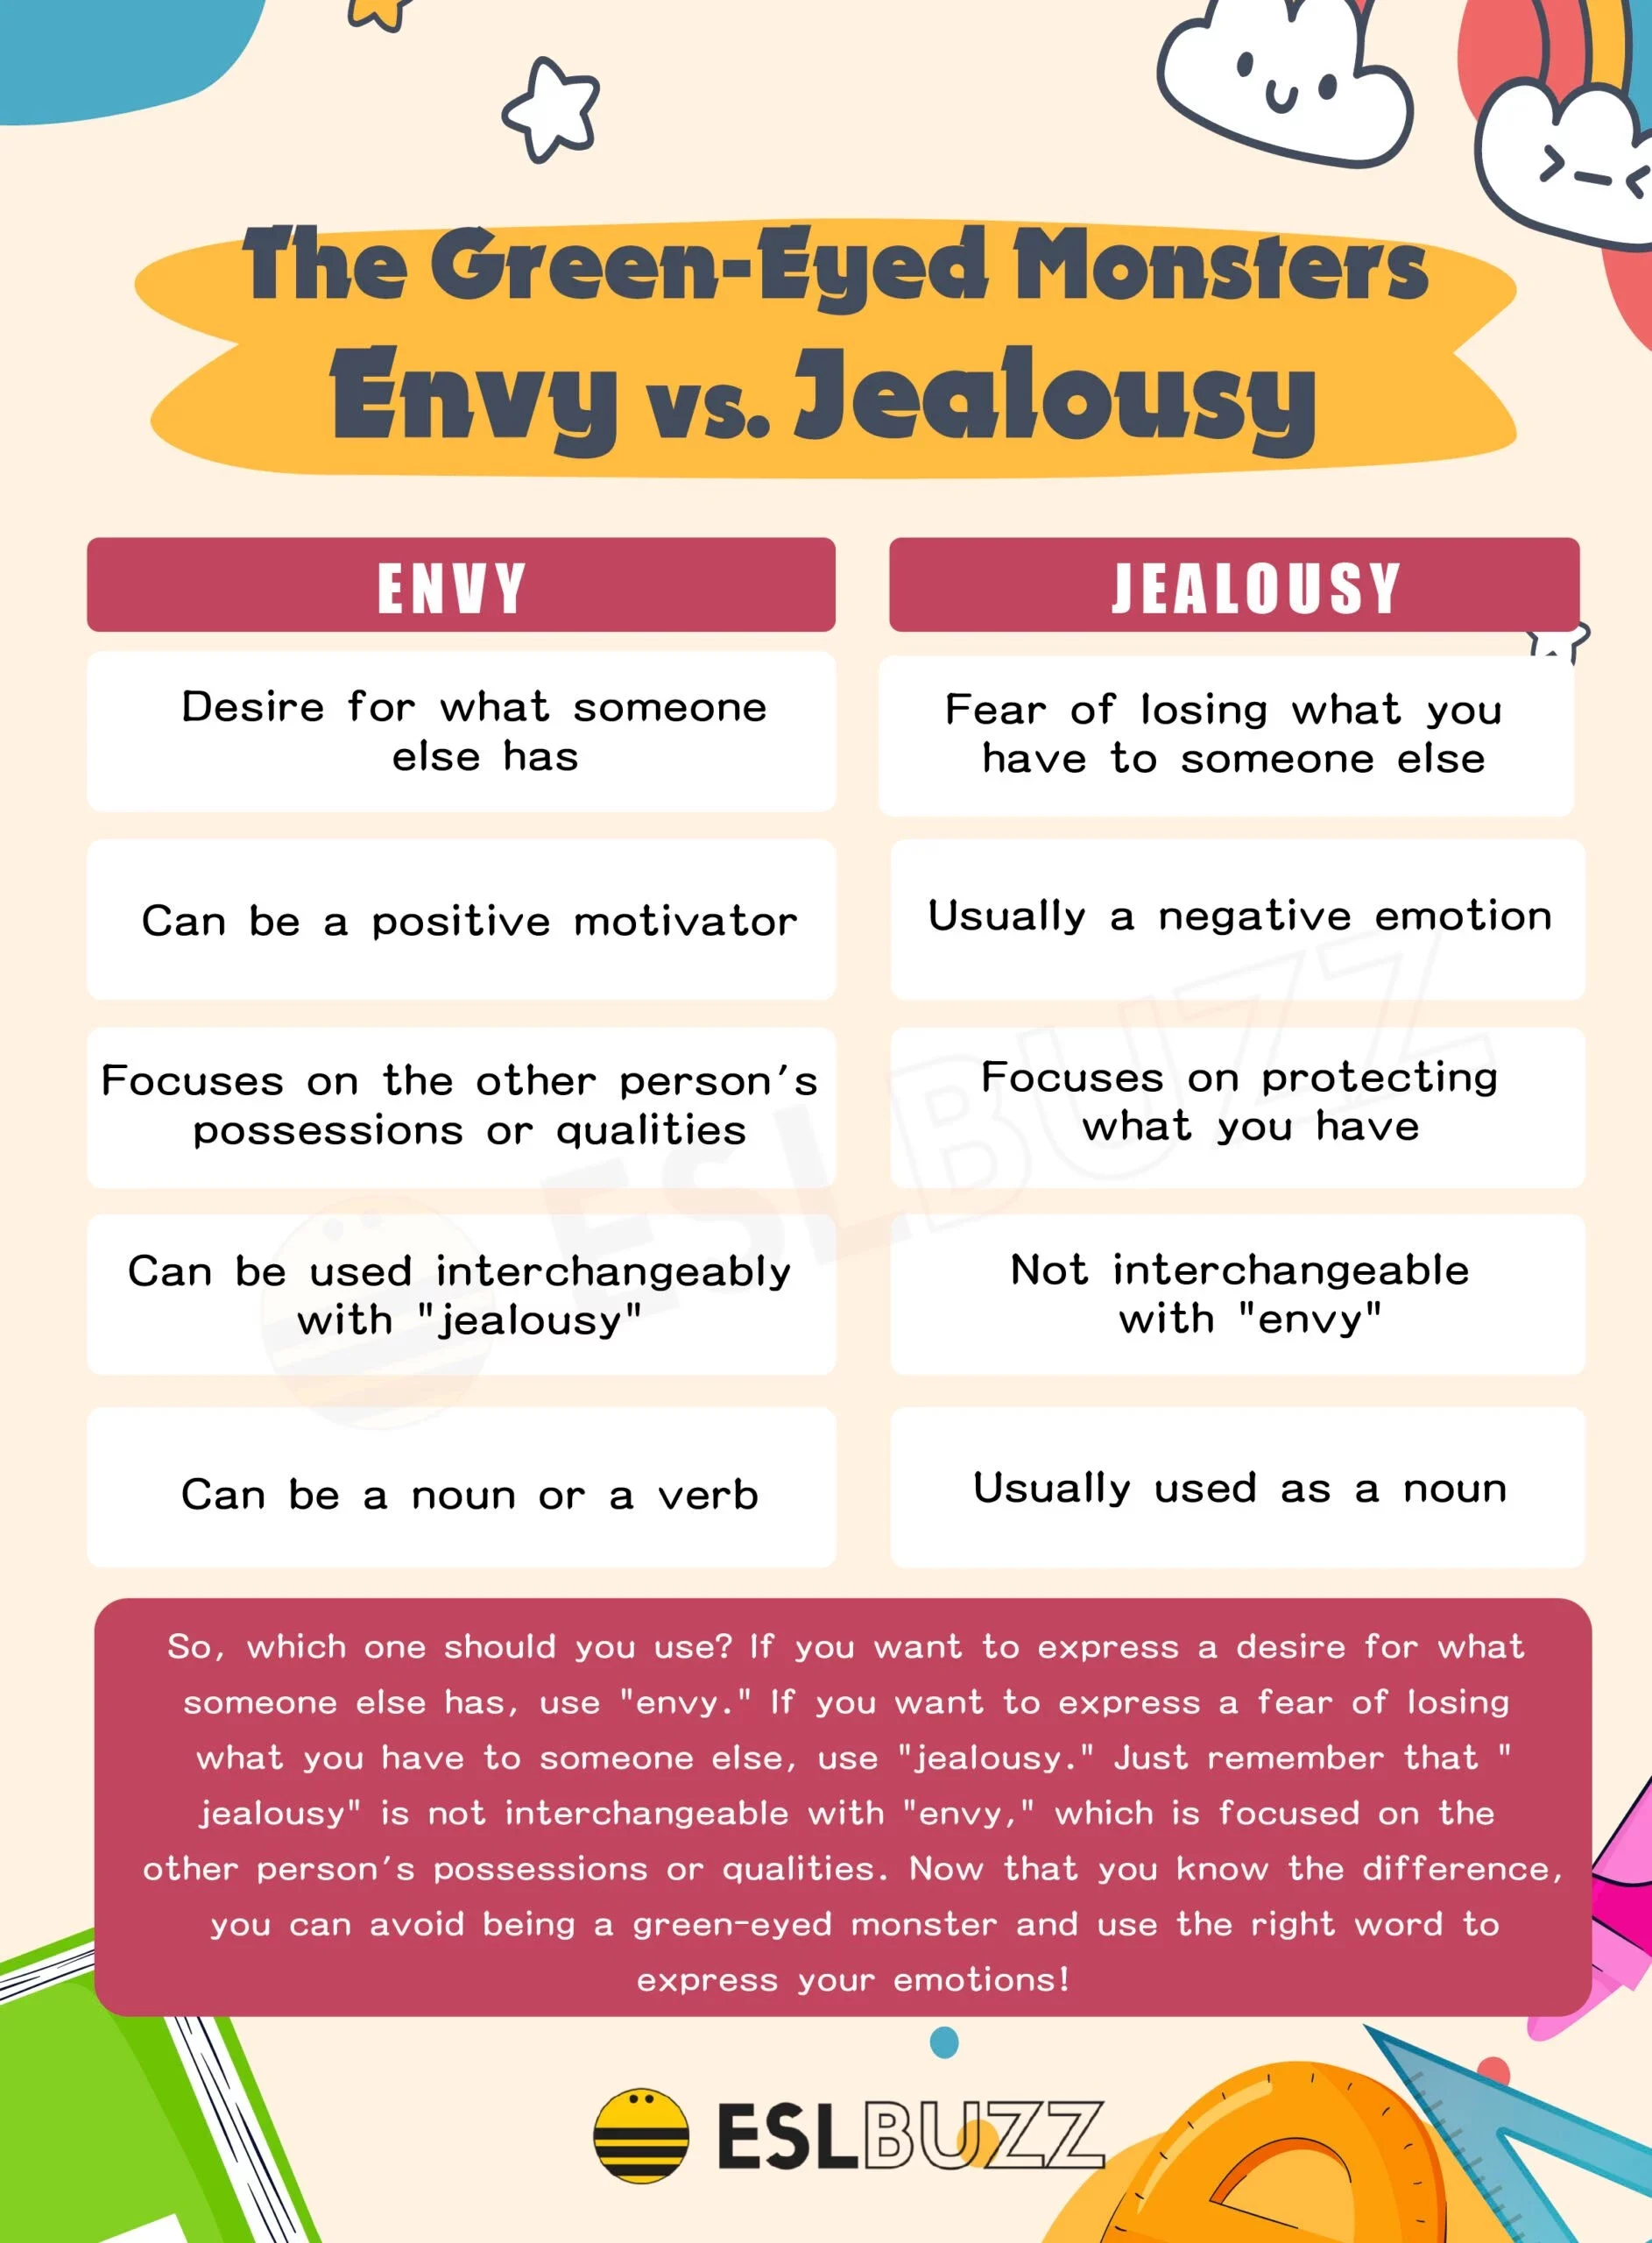 envy-vs-jealousy-scaled-8269615